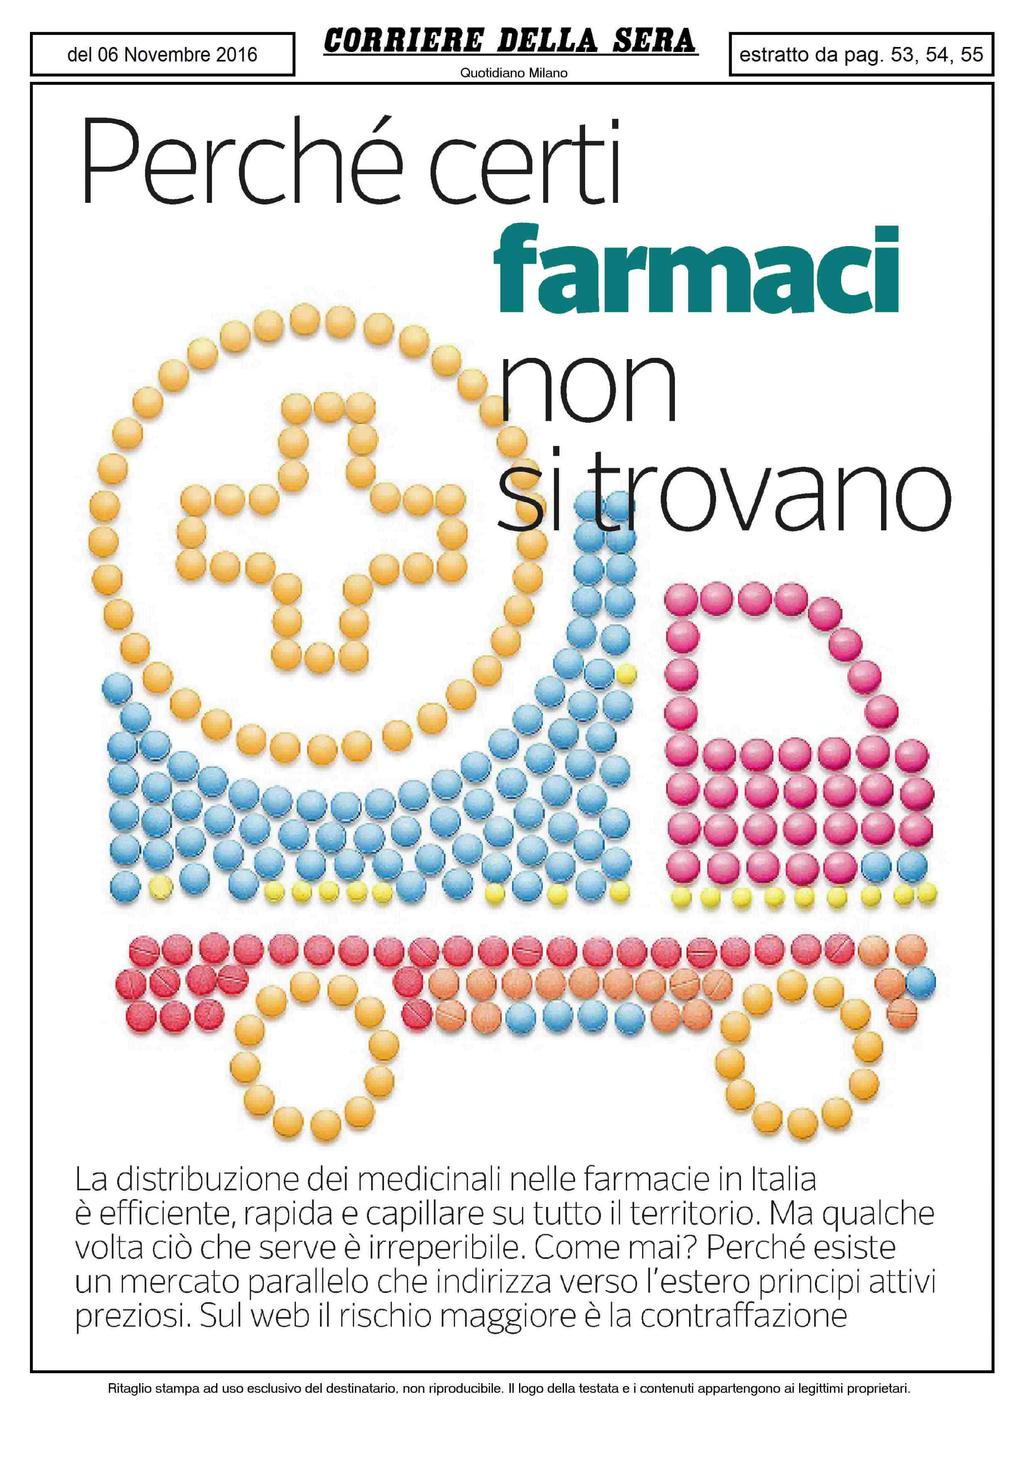 Perché certi farmaci u y **? J&.r ^ La distribuzione dei medicinali nelle farmacie in Italia è efficiente, rapida e capillare su tutto il territorio.